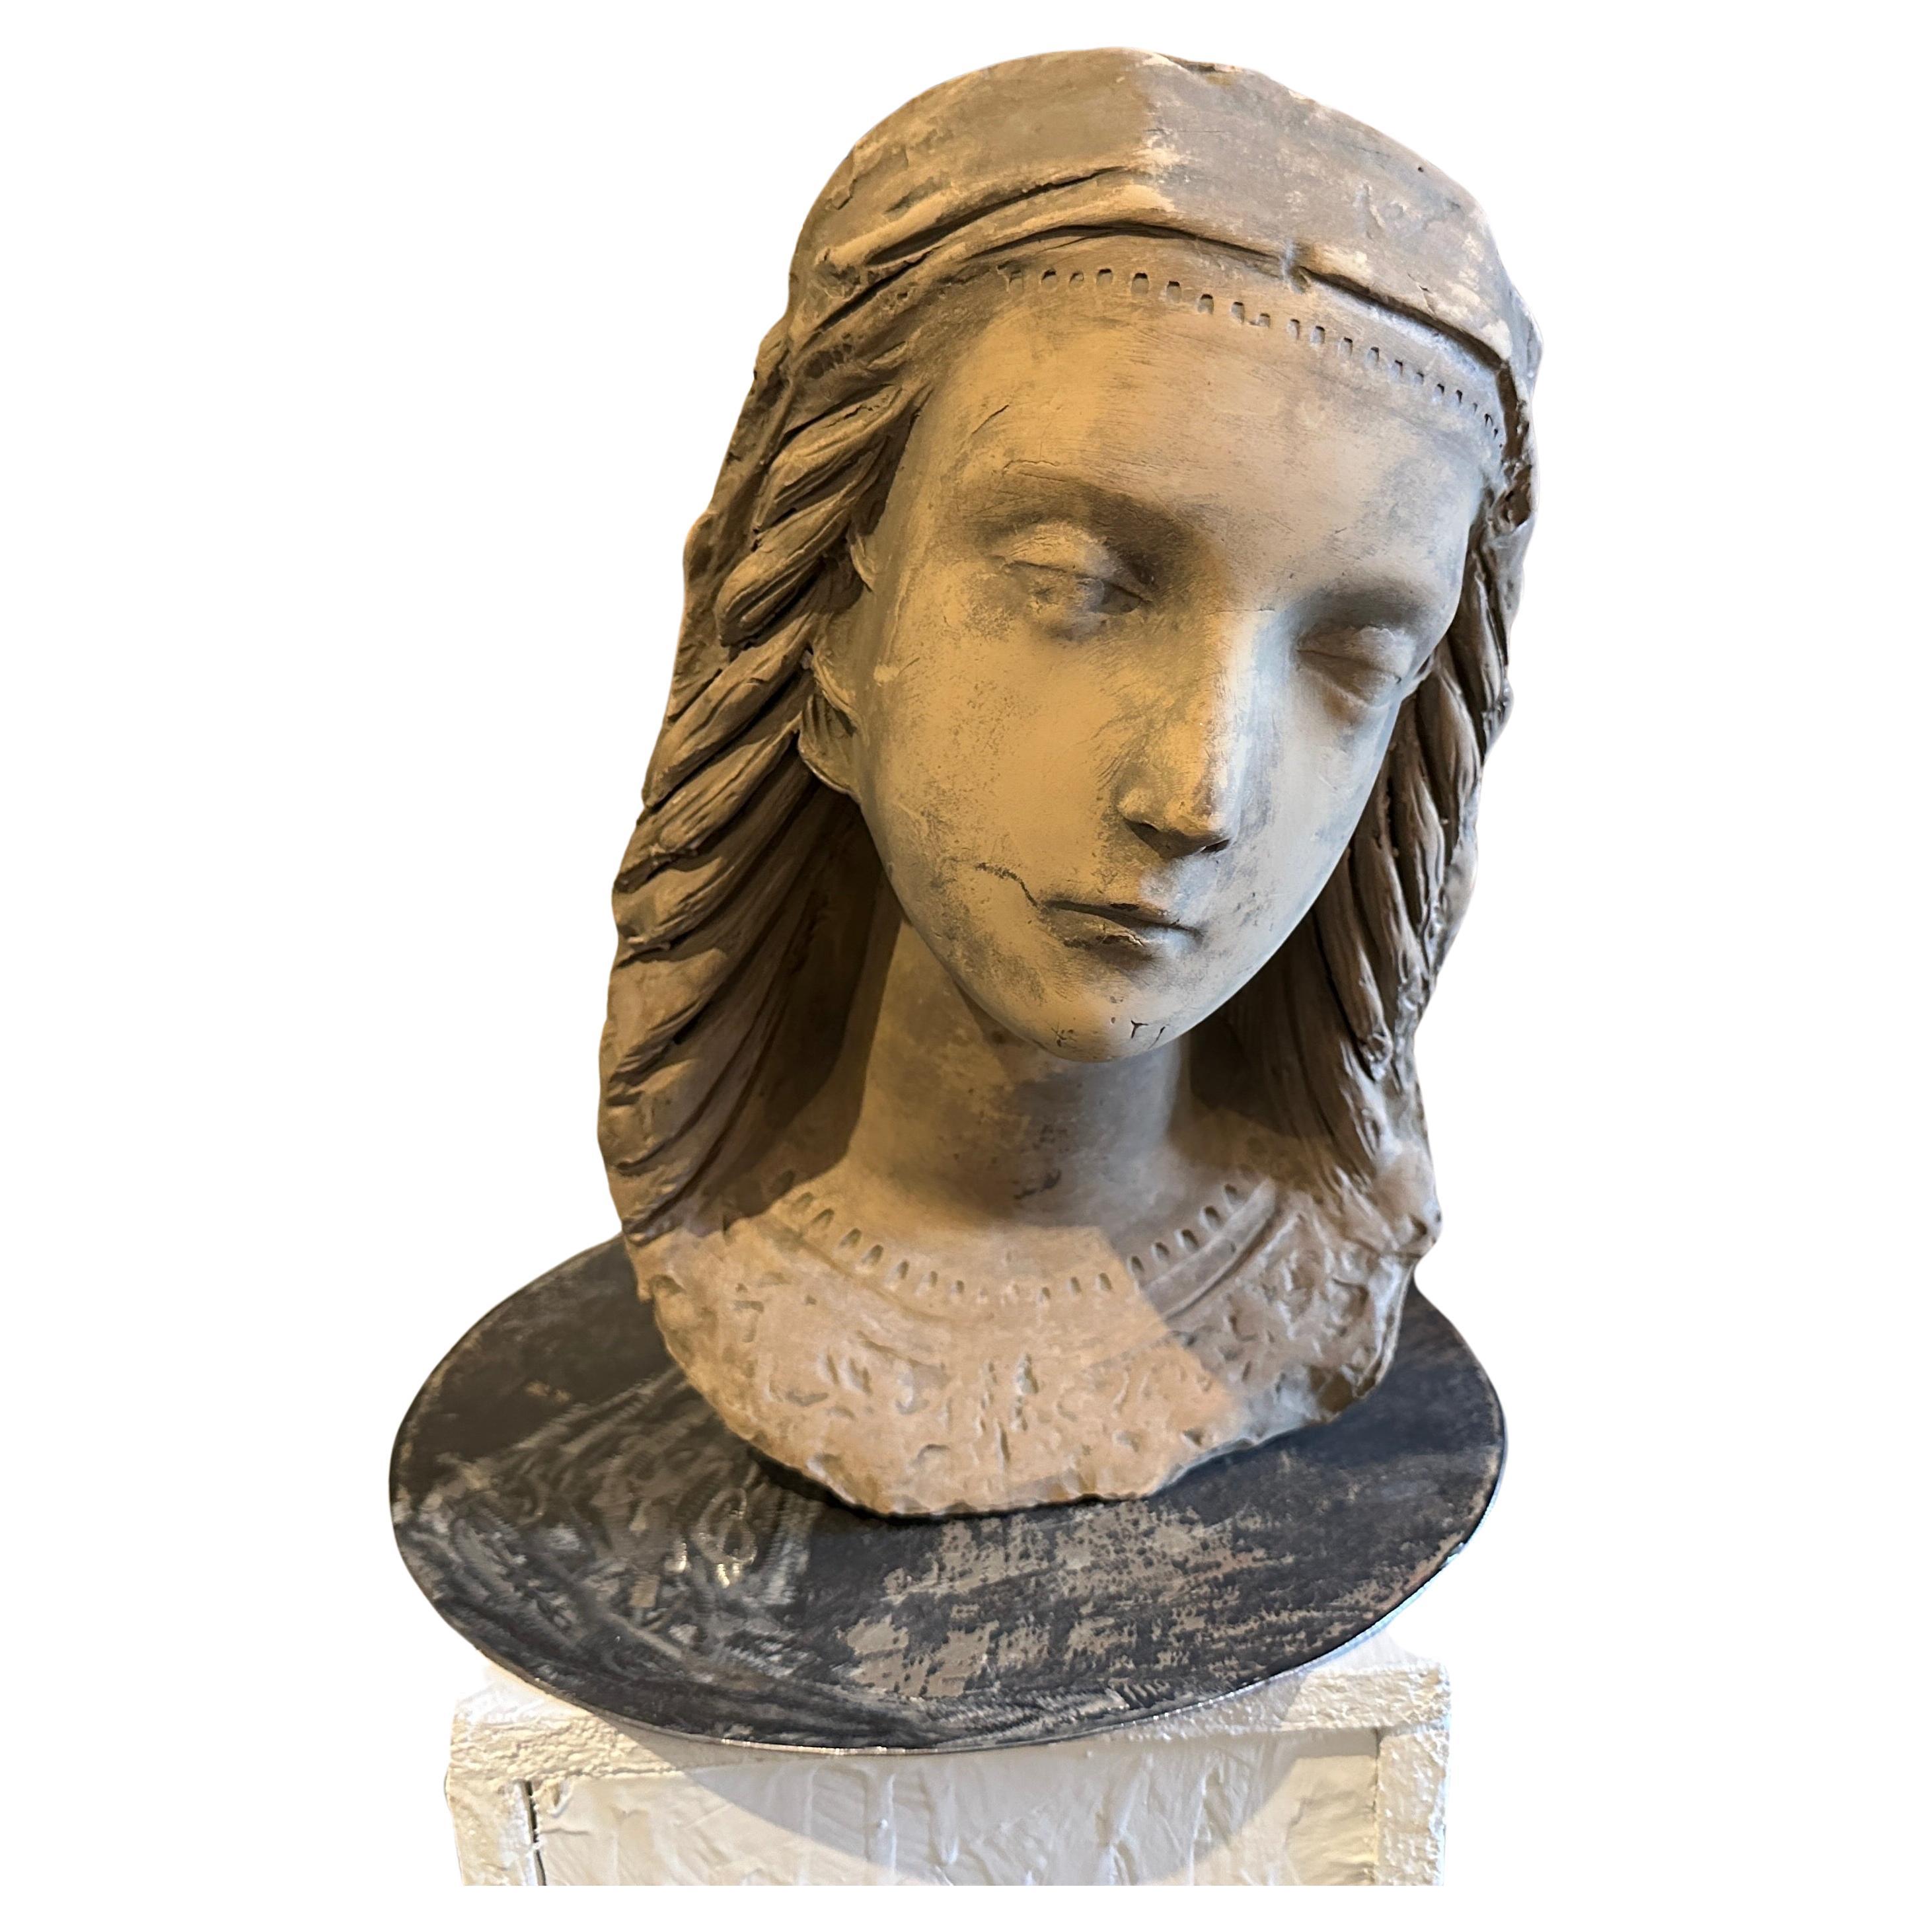 Cette tête de jeune femme en terre cuite sur un nouveau socle en fer est une œuvre d'art sculpturale saisissante, mêlant les formes organiques et les motifs stylisés caractéristiques du mouvement Art nouveau aux influences régionales distinctives de